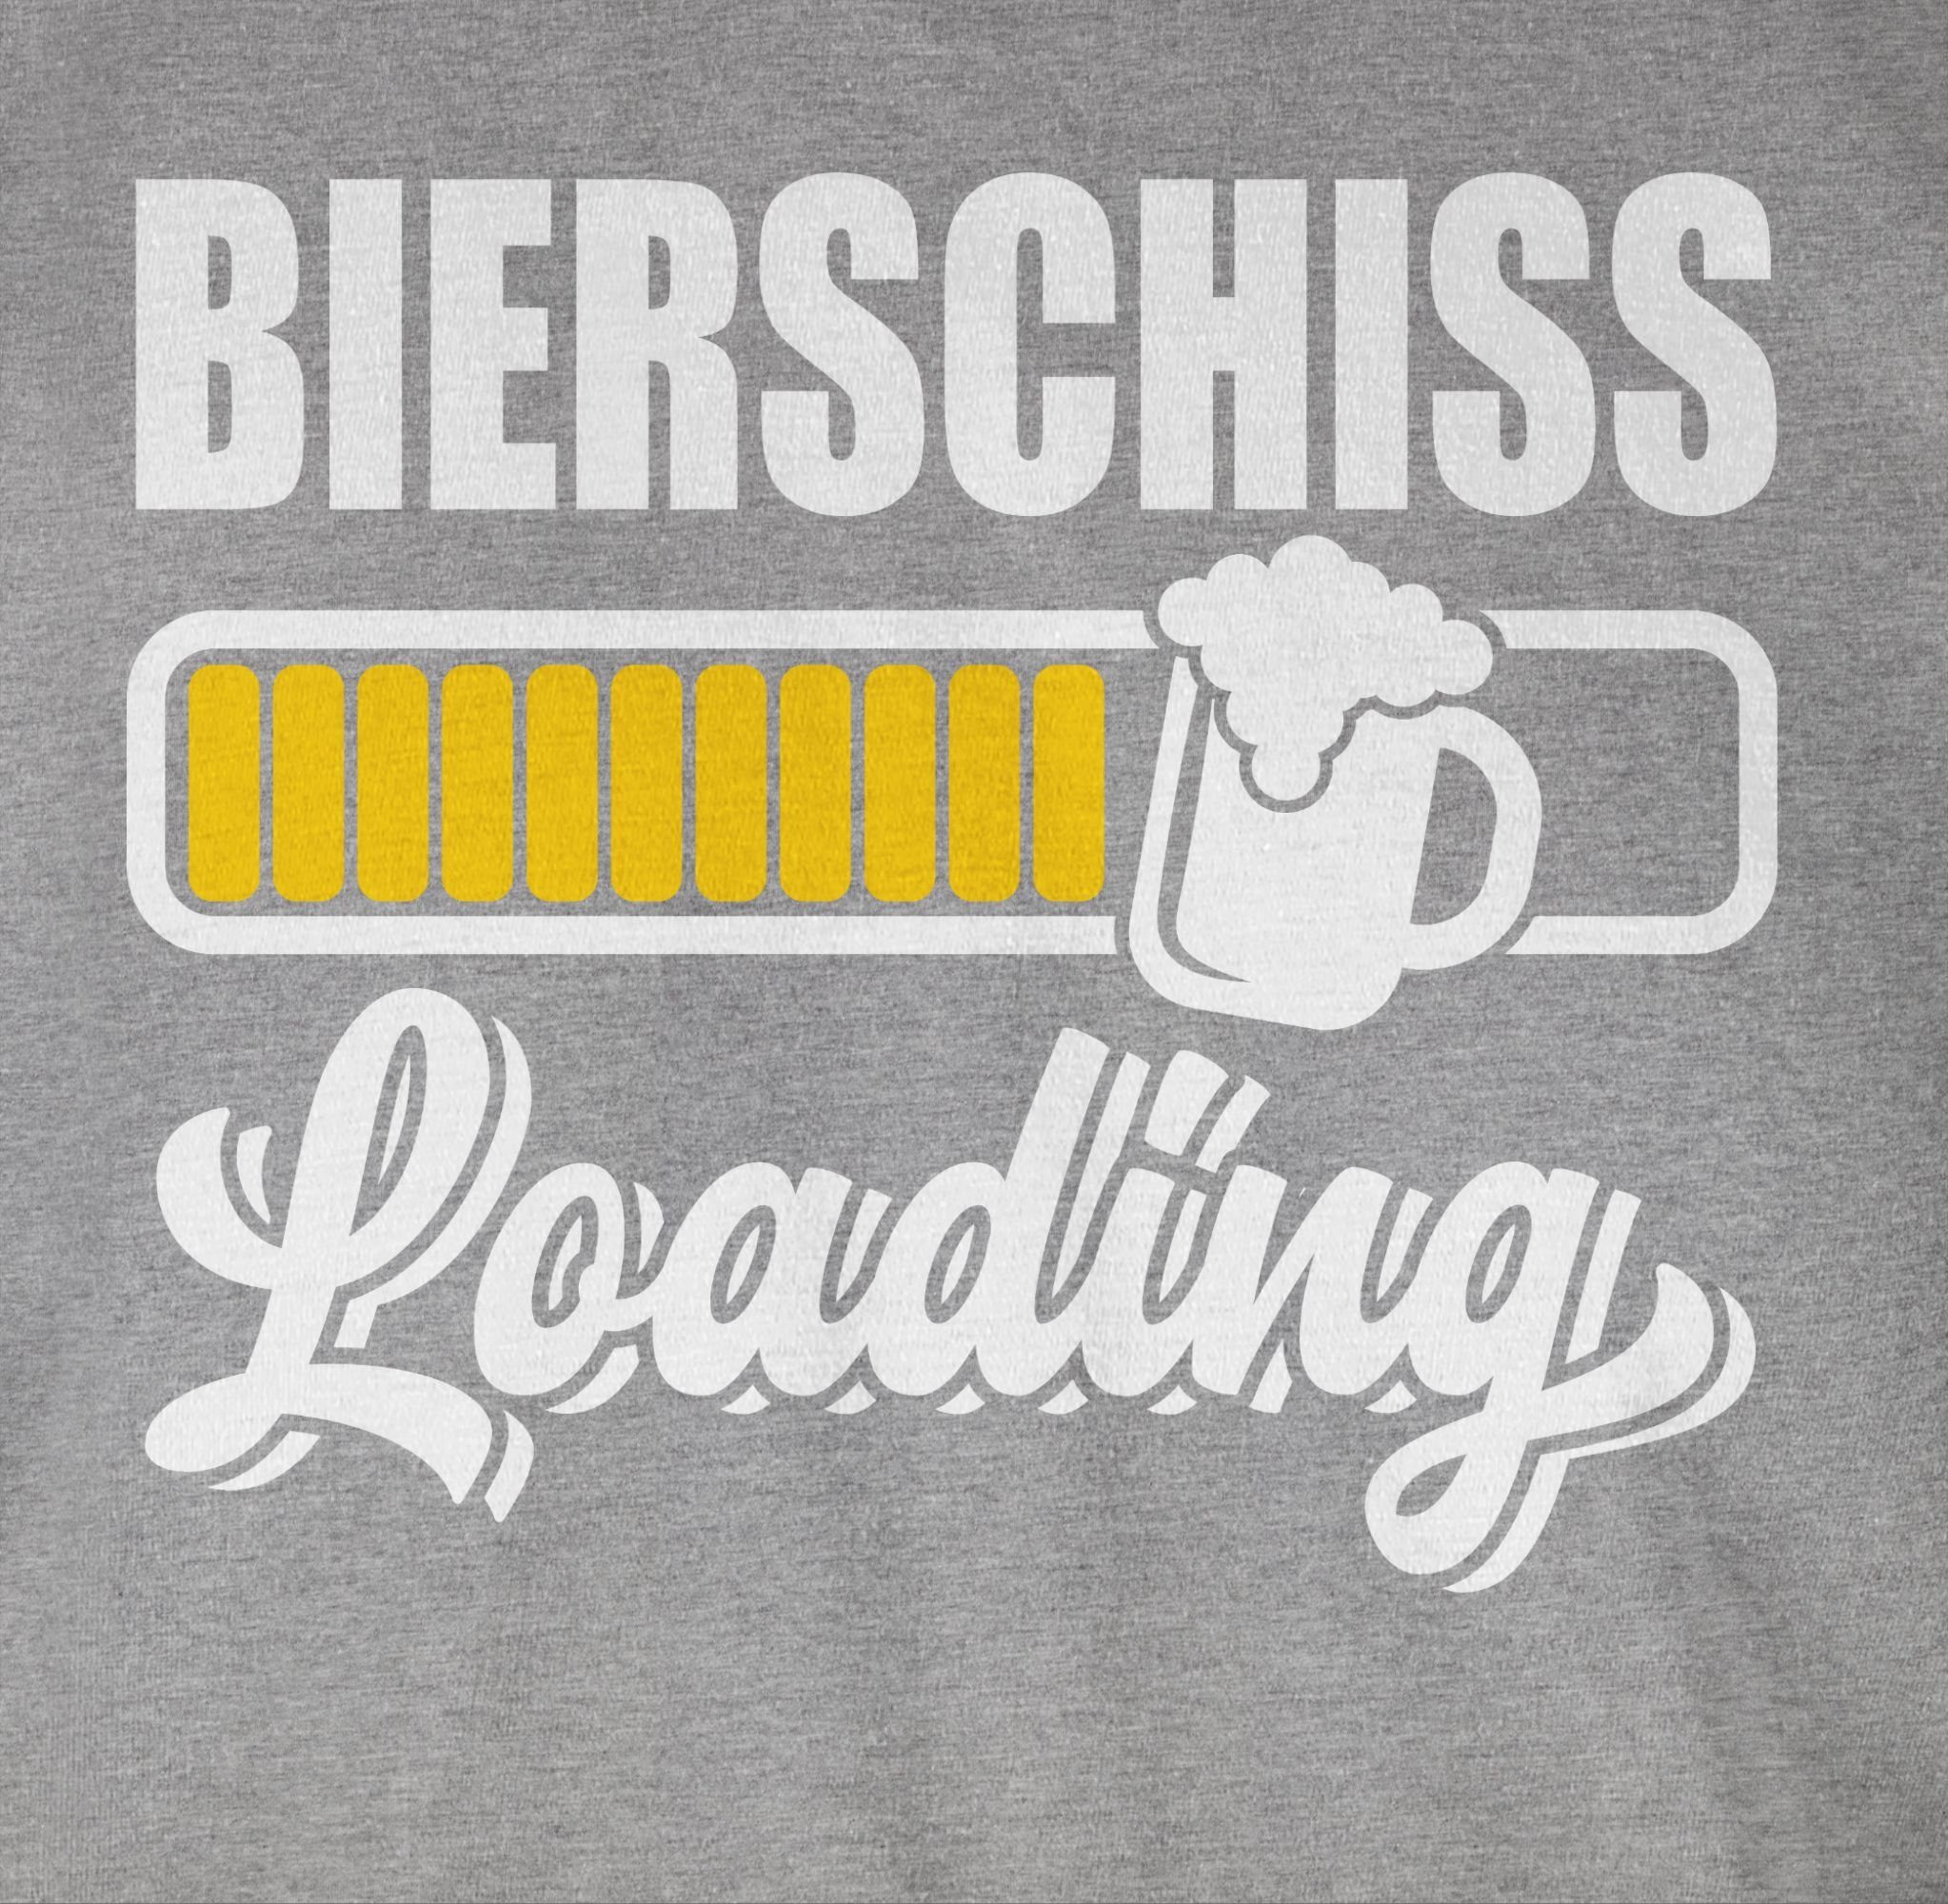 Bierschiss 2 loading Shirtracer meliert T-Shirt Outfit Karneval Grau